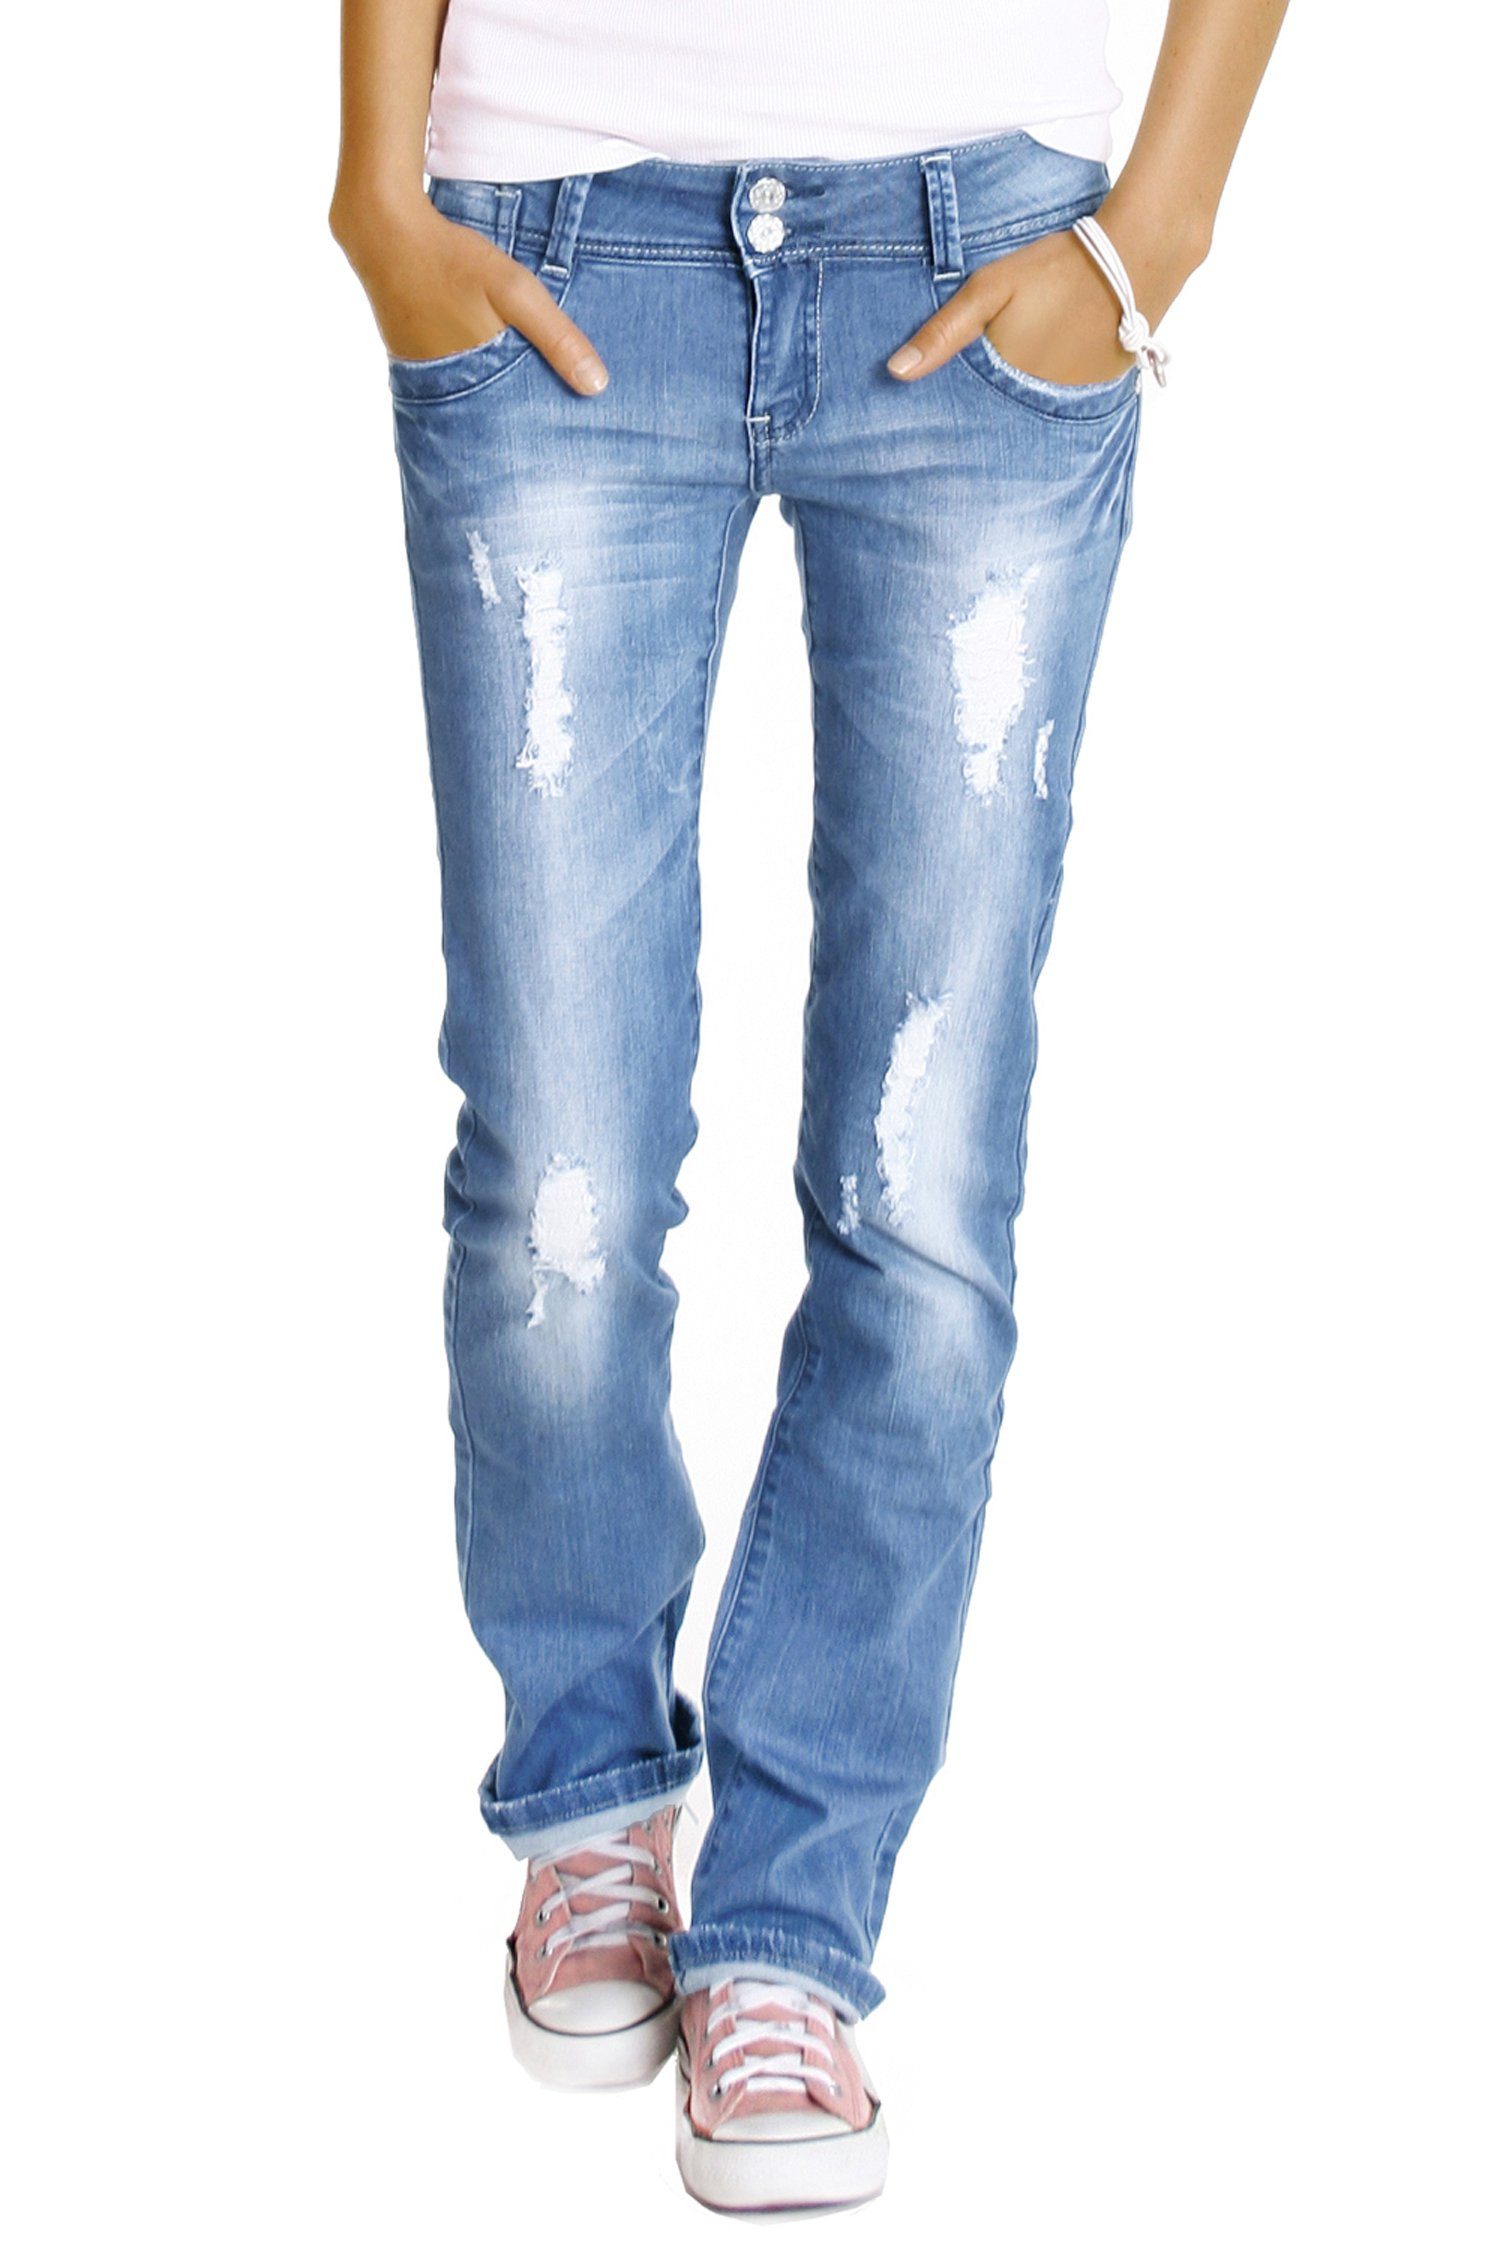 be styled Bootcut-Jeans Hüftjeans destroyed Джинсы буткат Hose zerrissen gerades bein - j28x mit Stretch-Anteil, 5-Pocket-Style